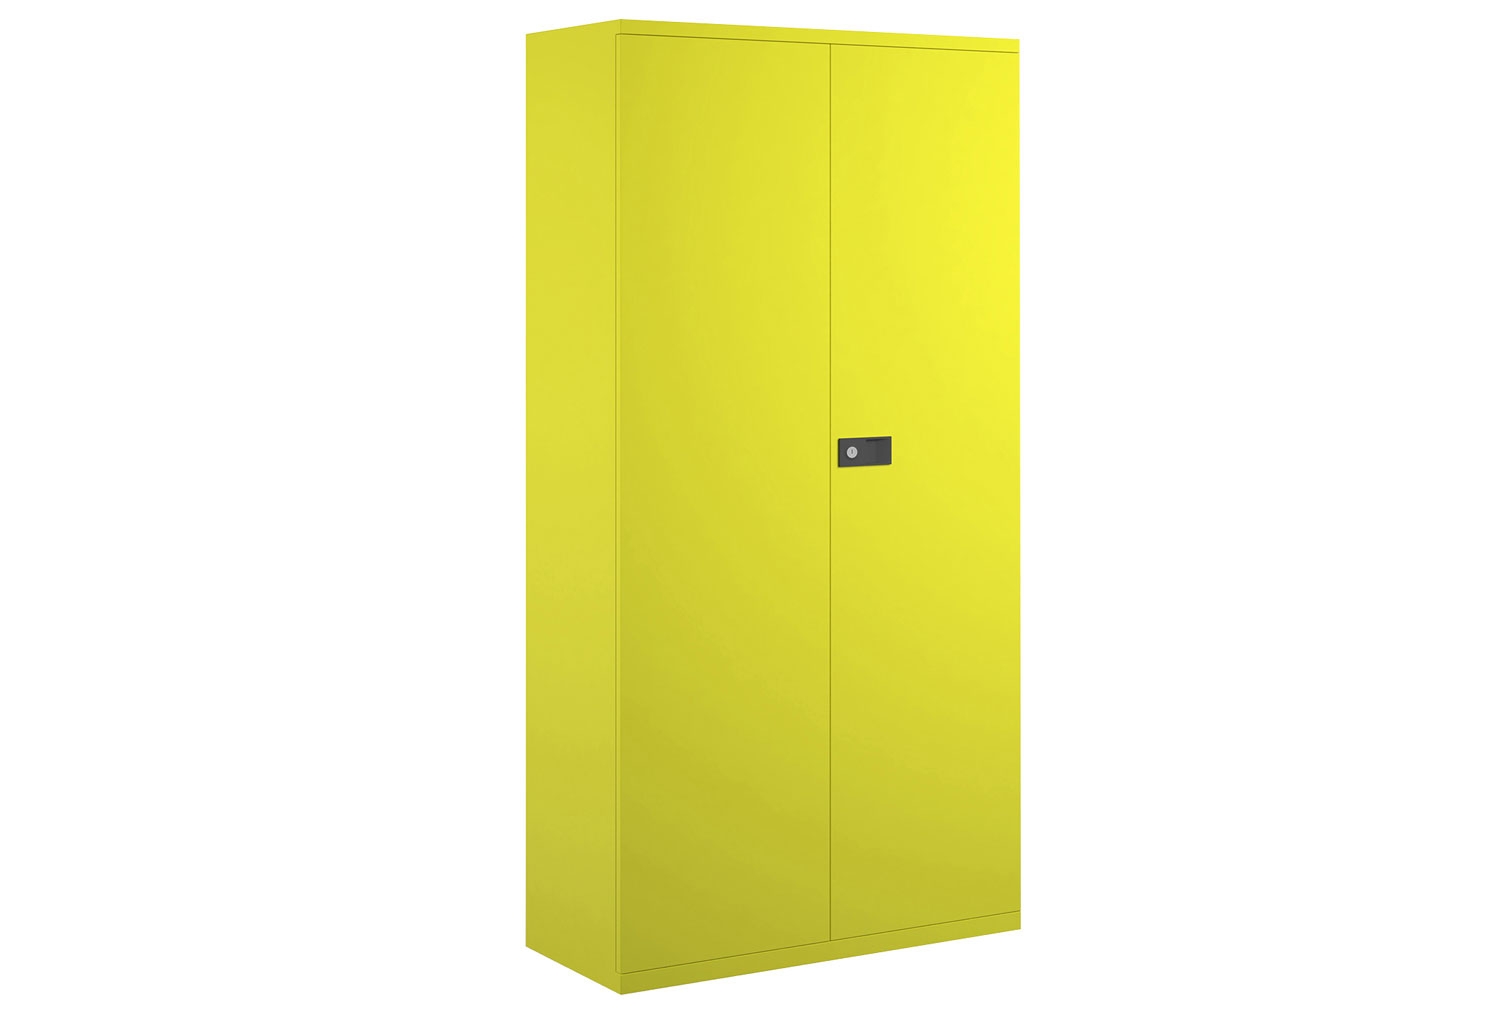 Bisley Economy Double Door Steel Office Cupboards, 4 Shelf - 91wx40dx197h (cm), Yellow